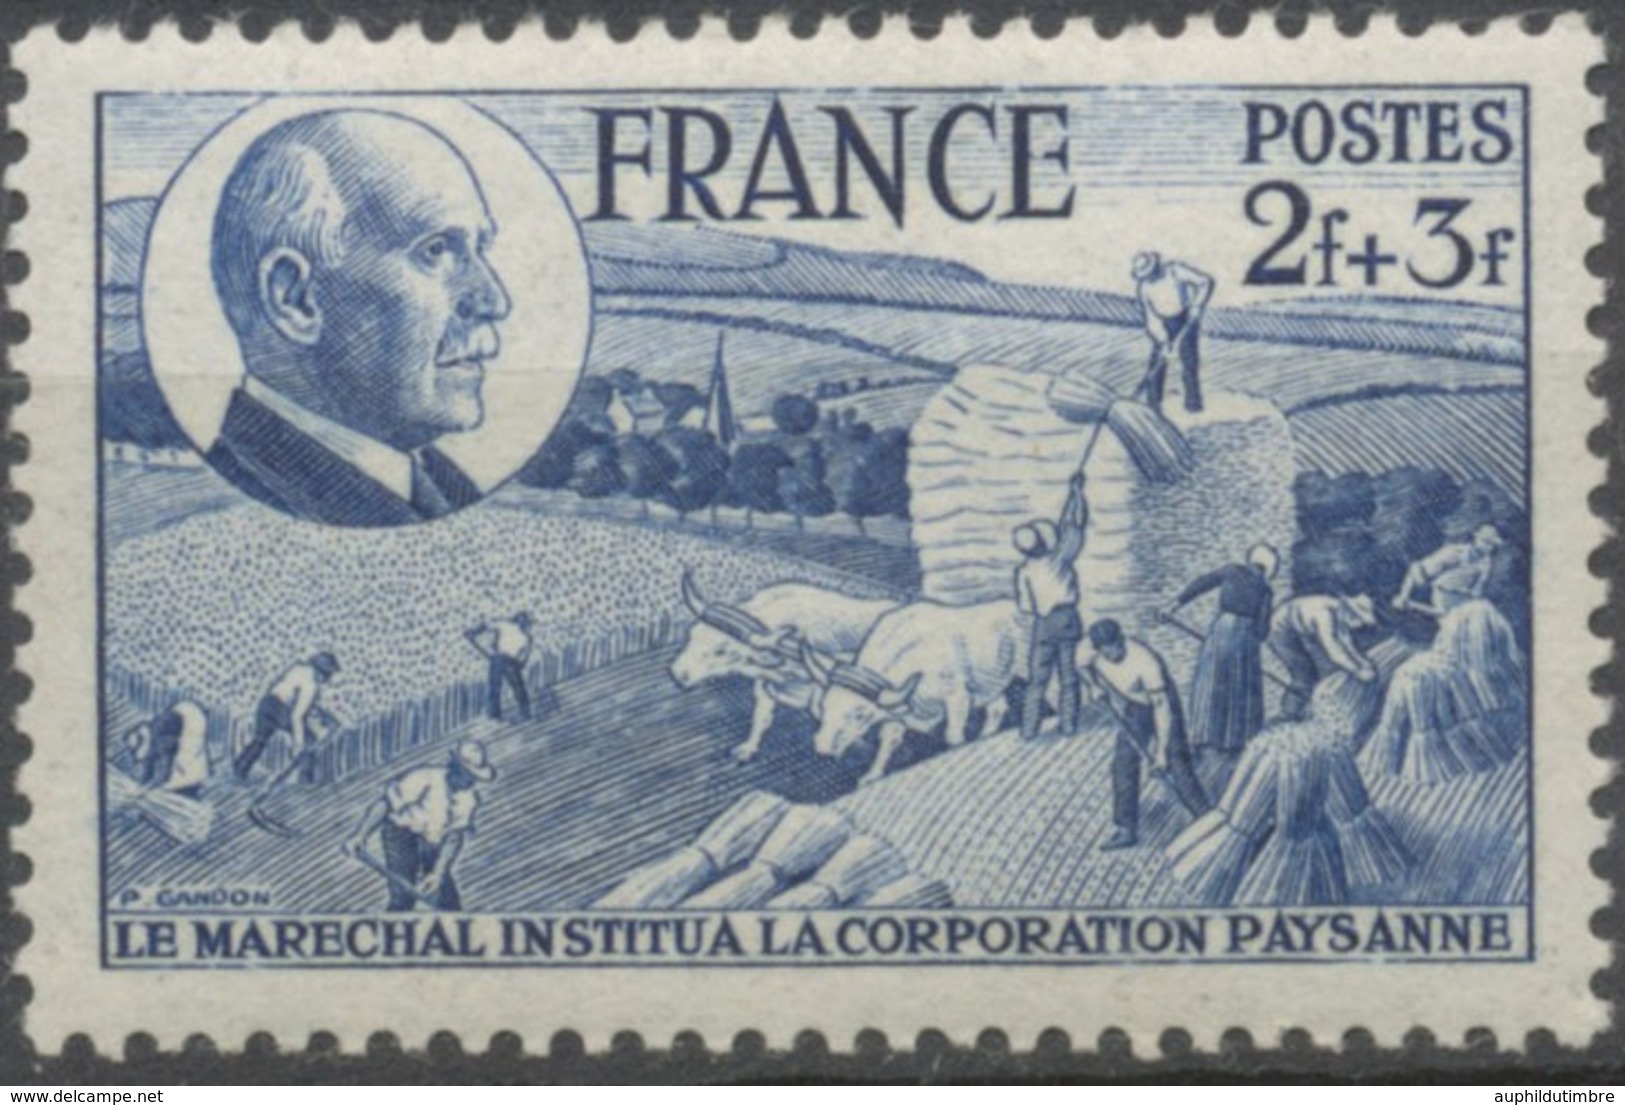 88e Anniversaire Du Maréchal Pétain. Corporation Paysanne.  2f.+3f. Bleu Neuf Luxe ** Y607 - Nuevos